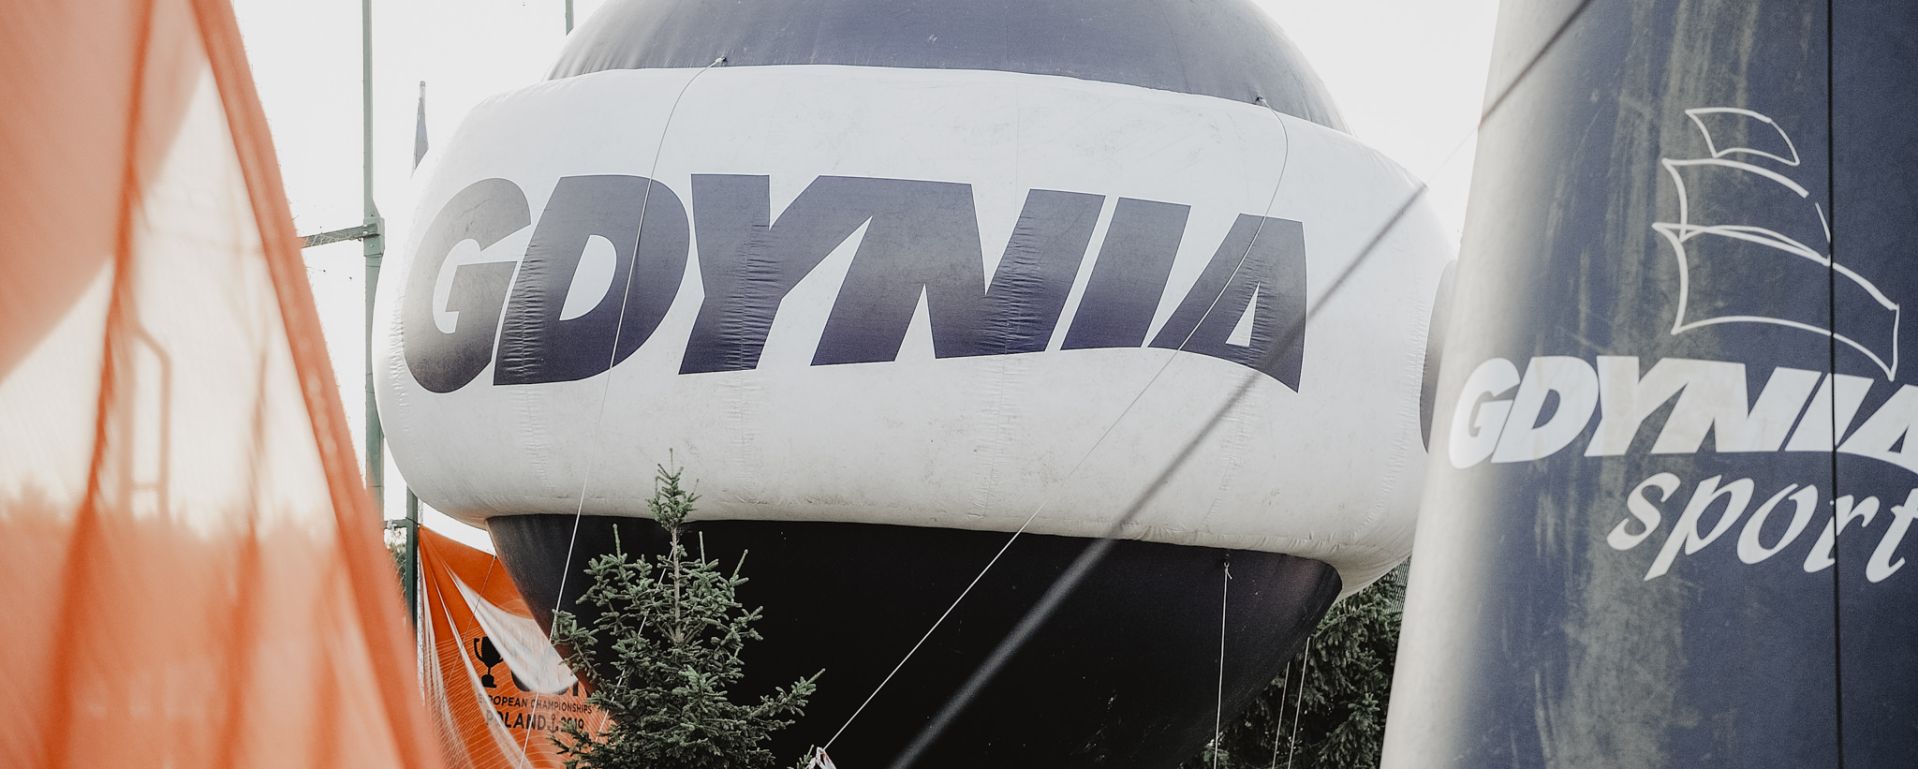 Balon Gdyni 